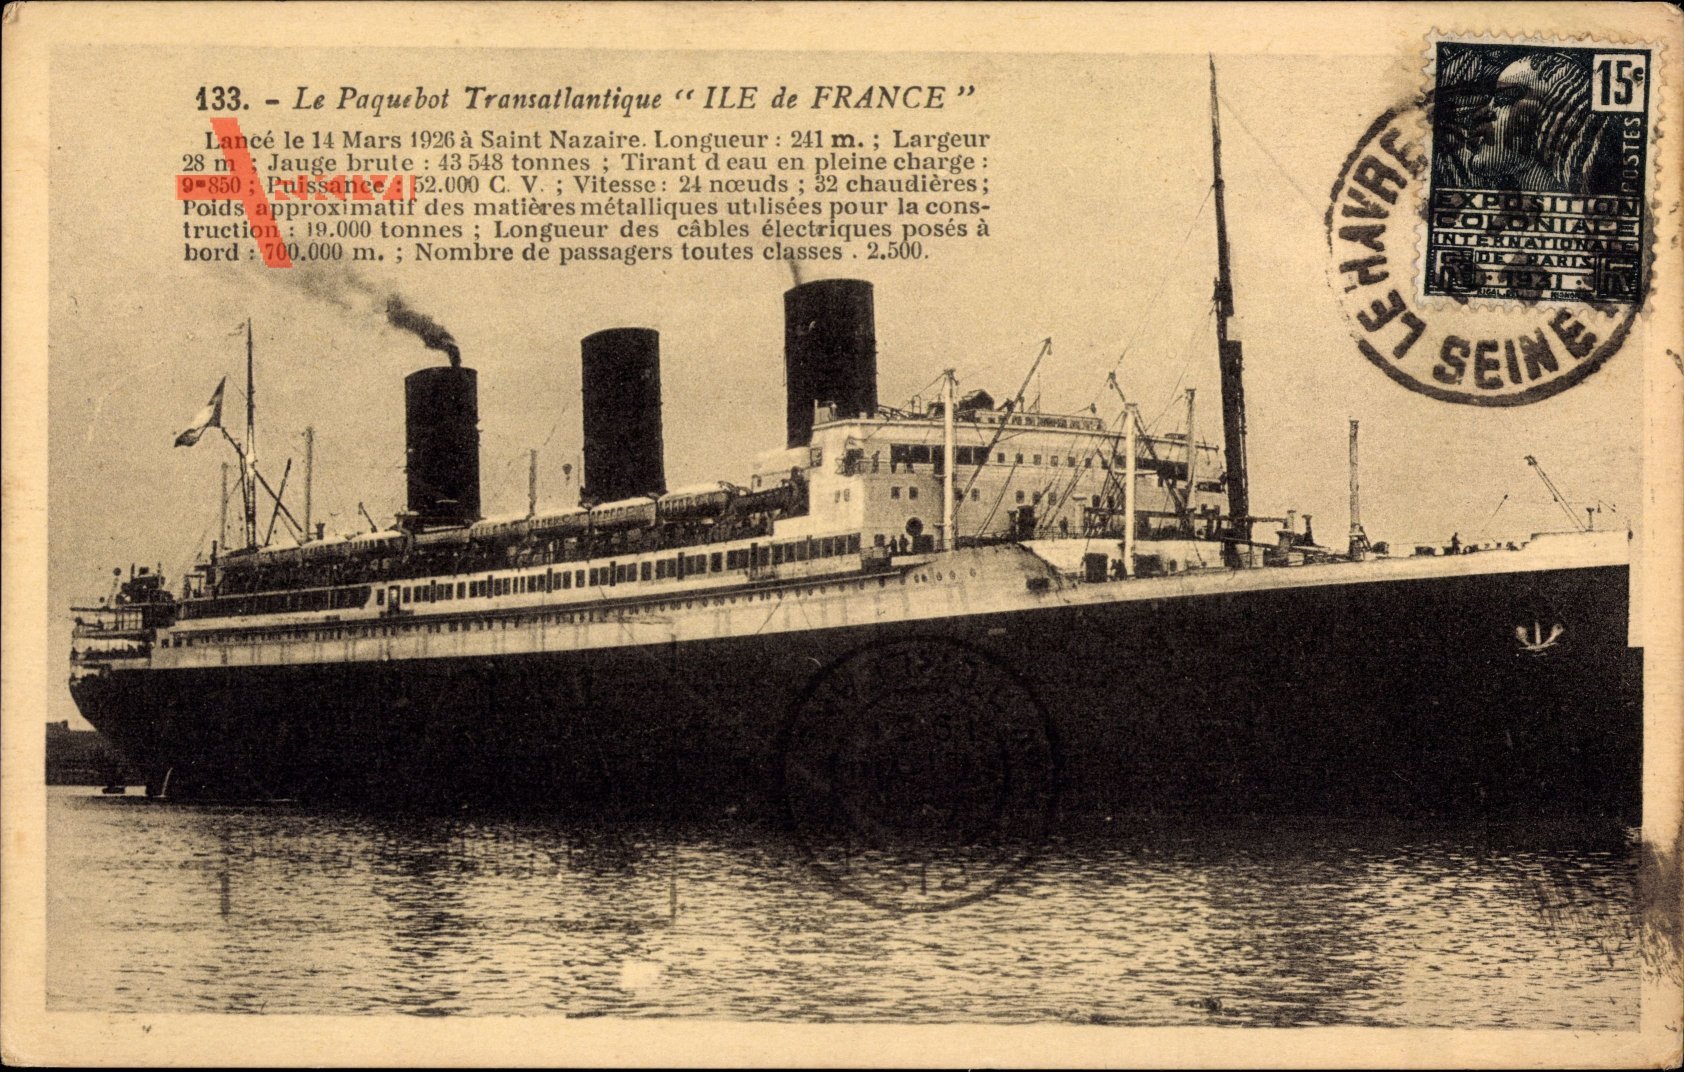 Paquebot Ile de France, Dampfschiff, CGT, French Line